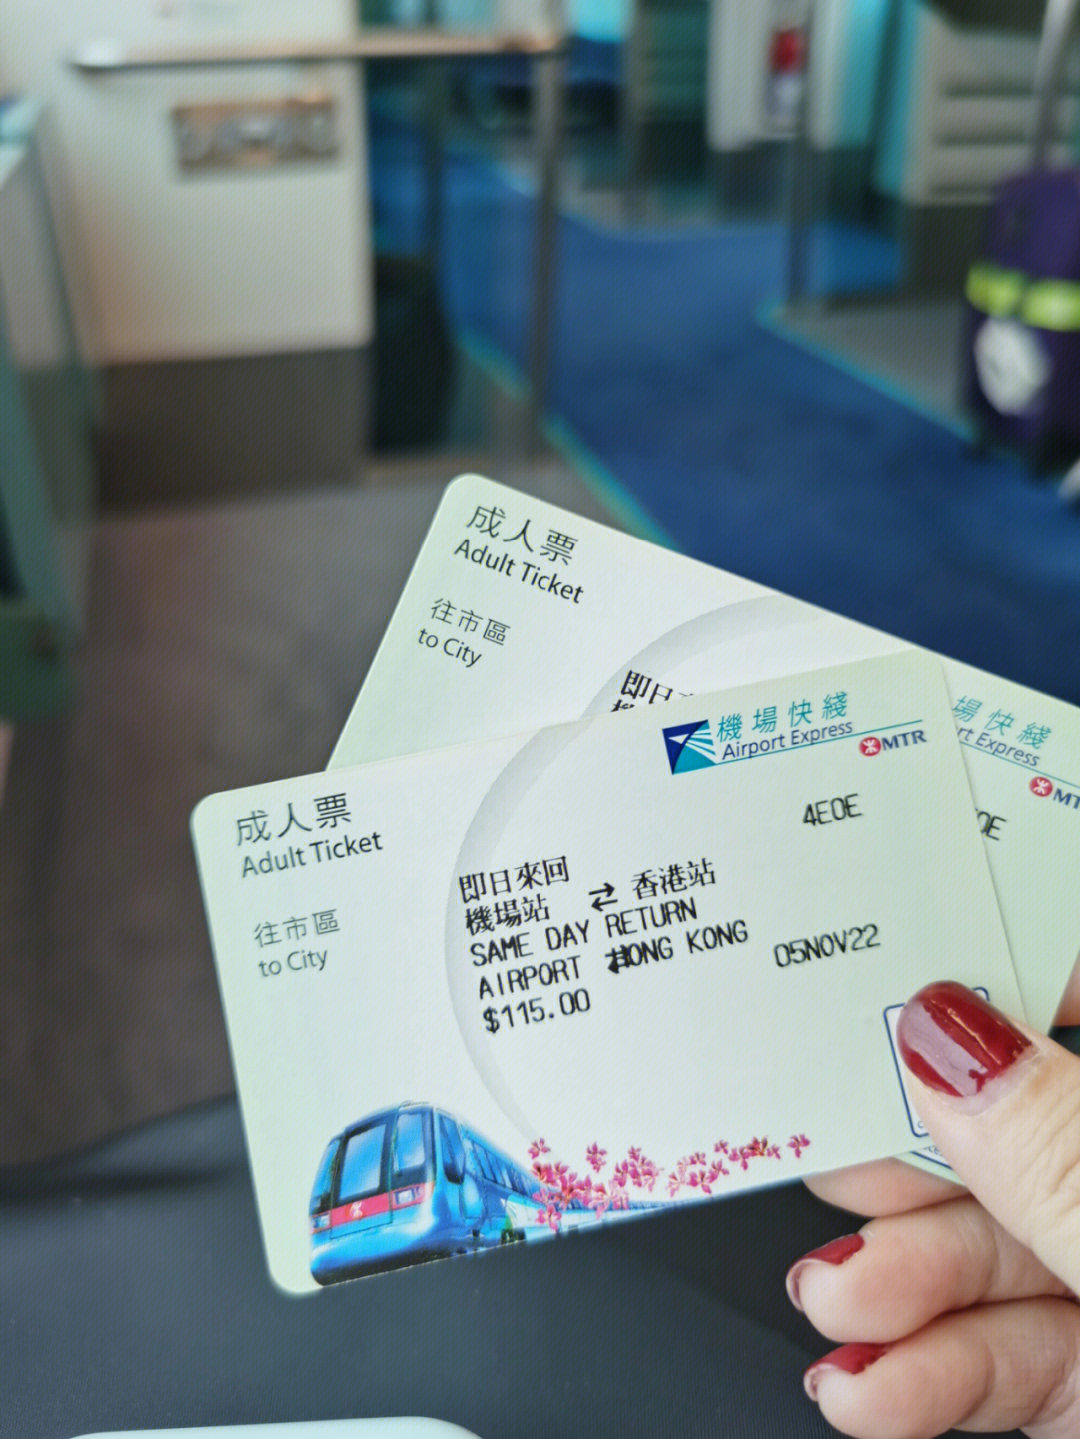 11月5日下今天搭机场快线去了香港站,成人票一天往返115元,机场人员说